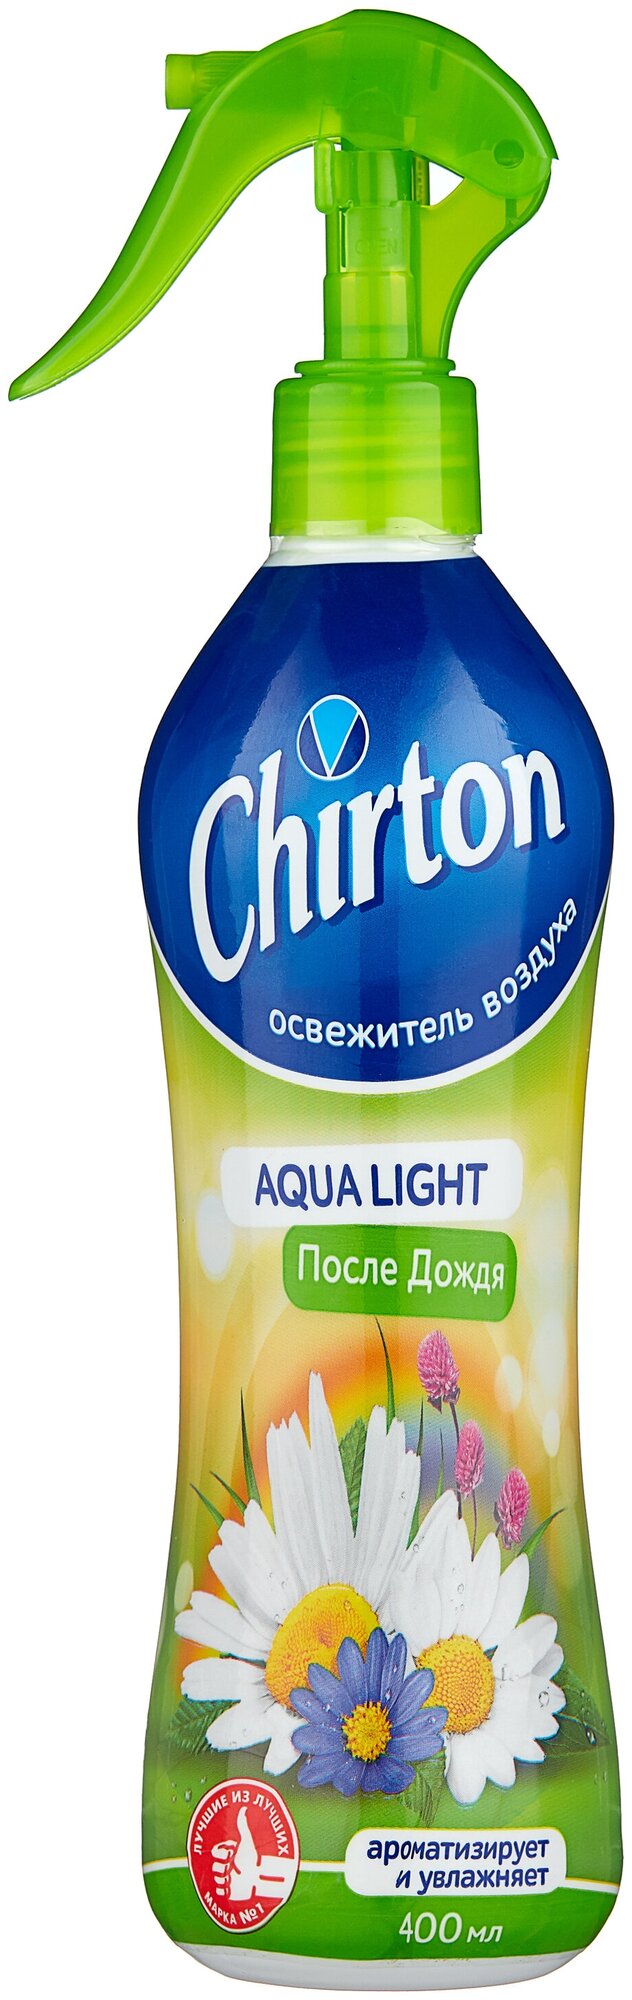 Chirton освежитель воздуха Aqua Light После дождя 400 мл